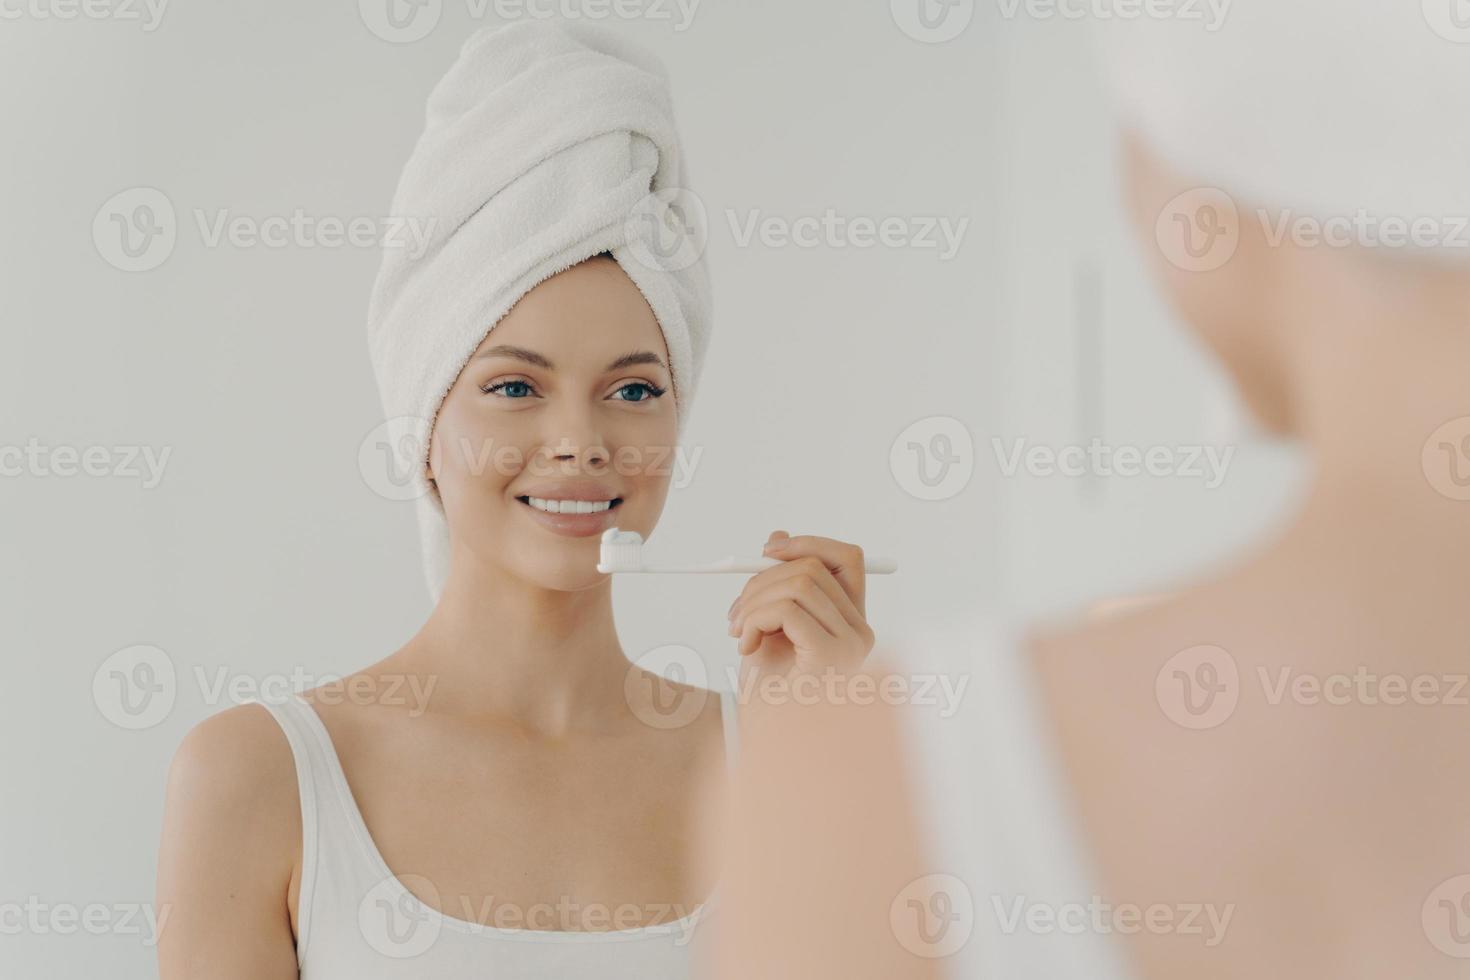 frisk vacker kvinna med handduk på huvudet efter dusch med ett tandigt leende medan hon försiktigt borstar tänderna foto